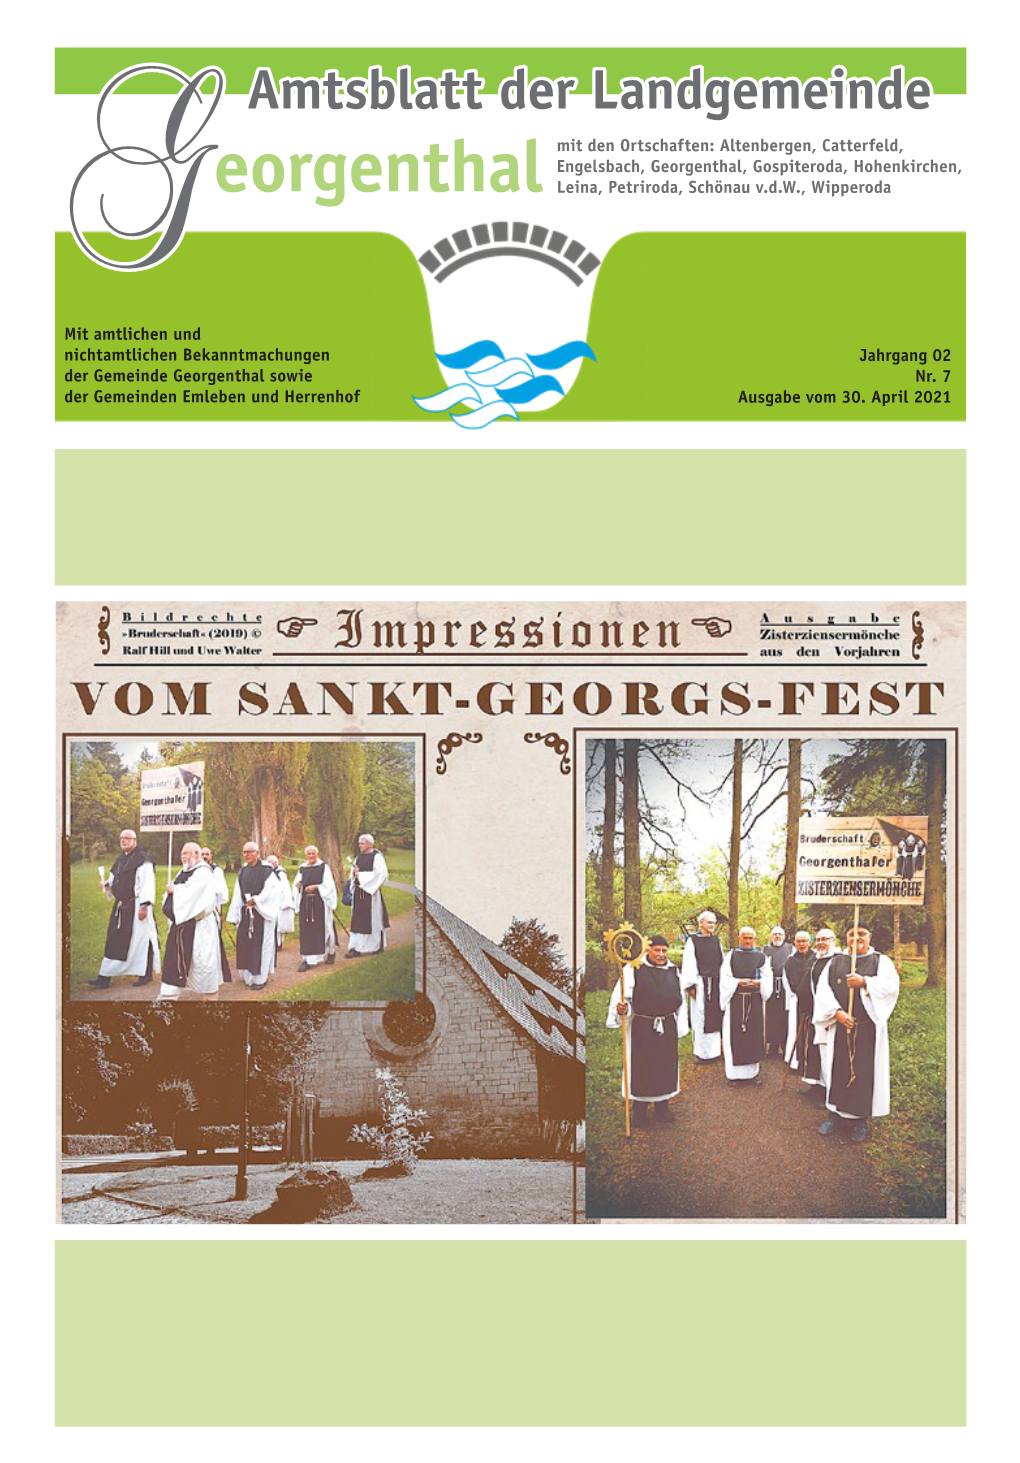 Amtsblatt Nr. 07 / 2021